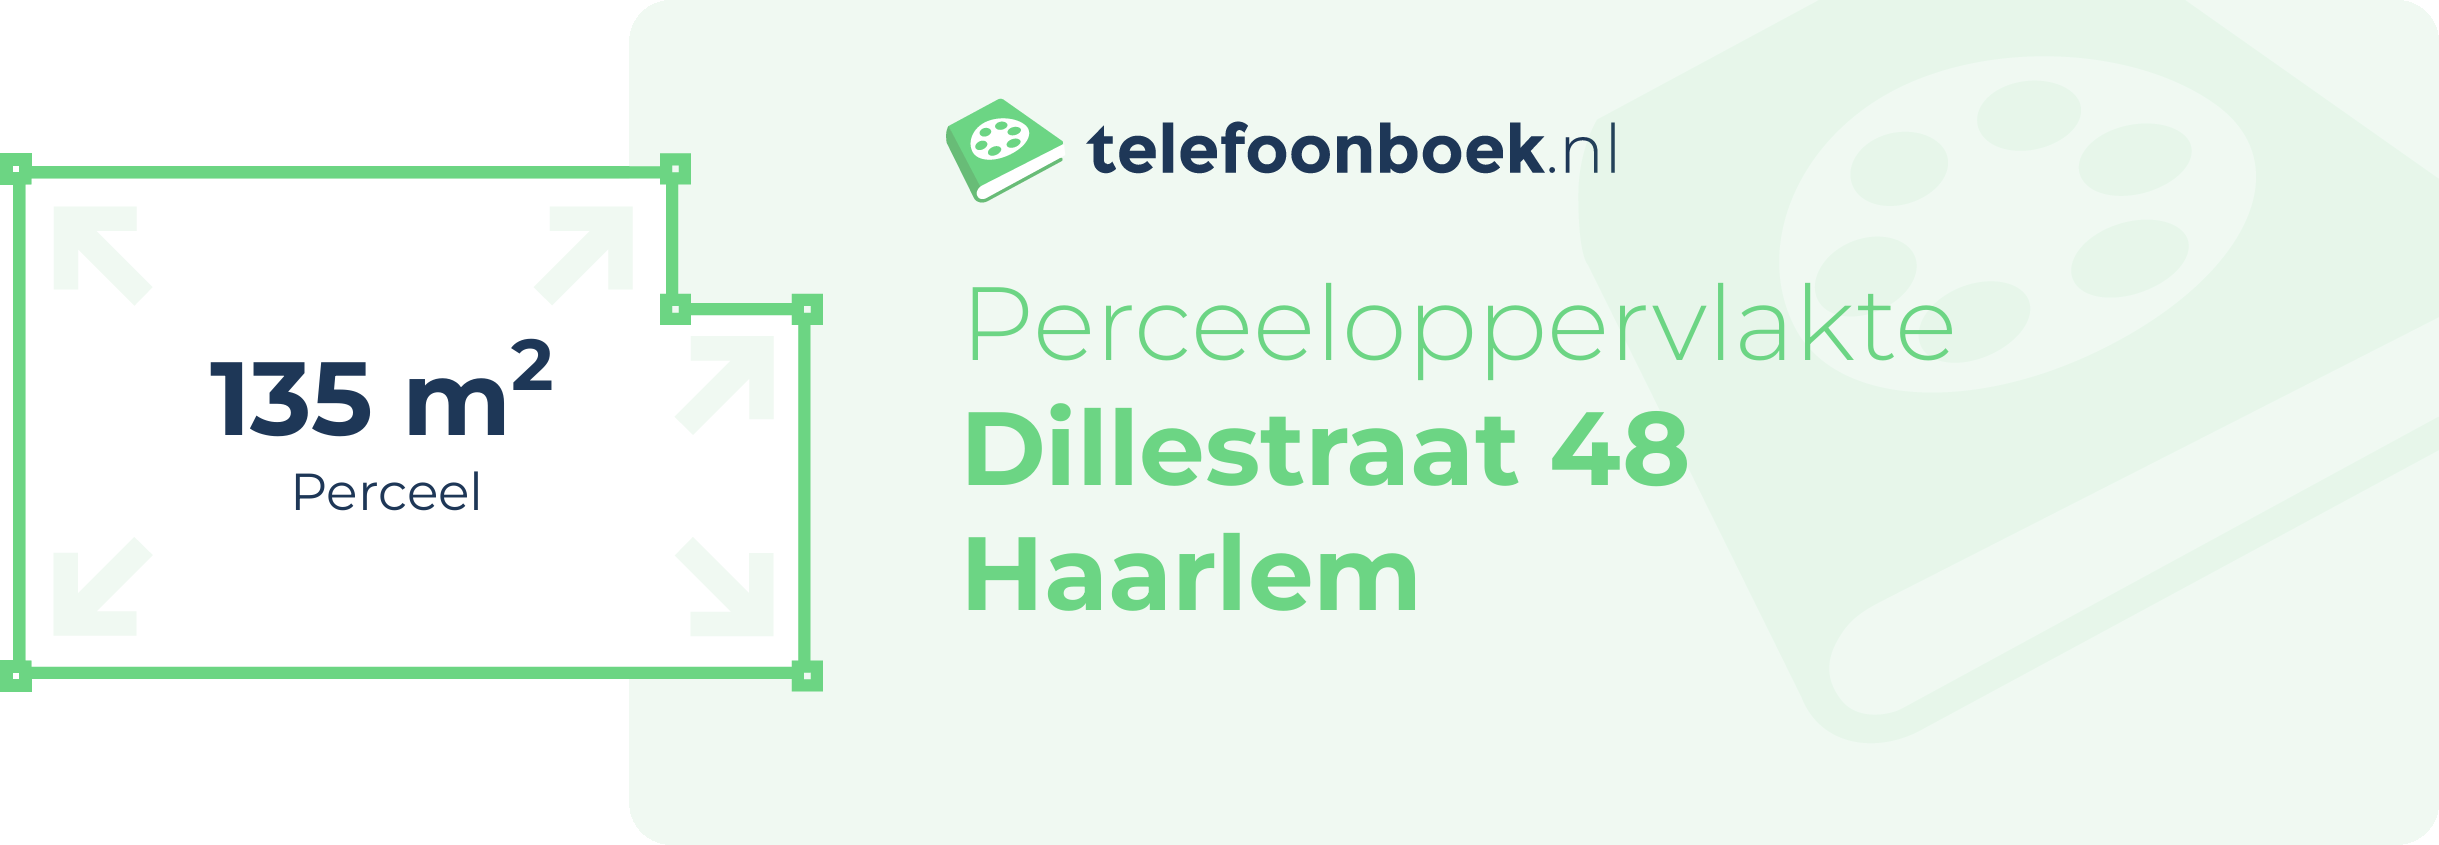 Perceeloppervlakte Dillestraat 48 Haarlem